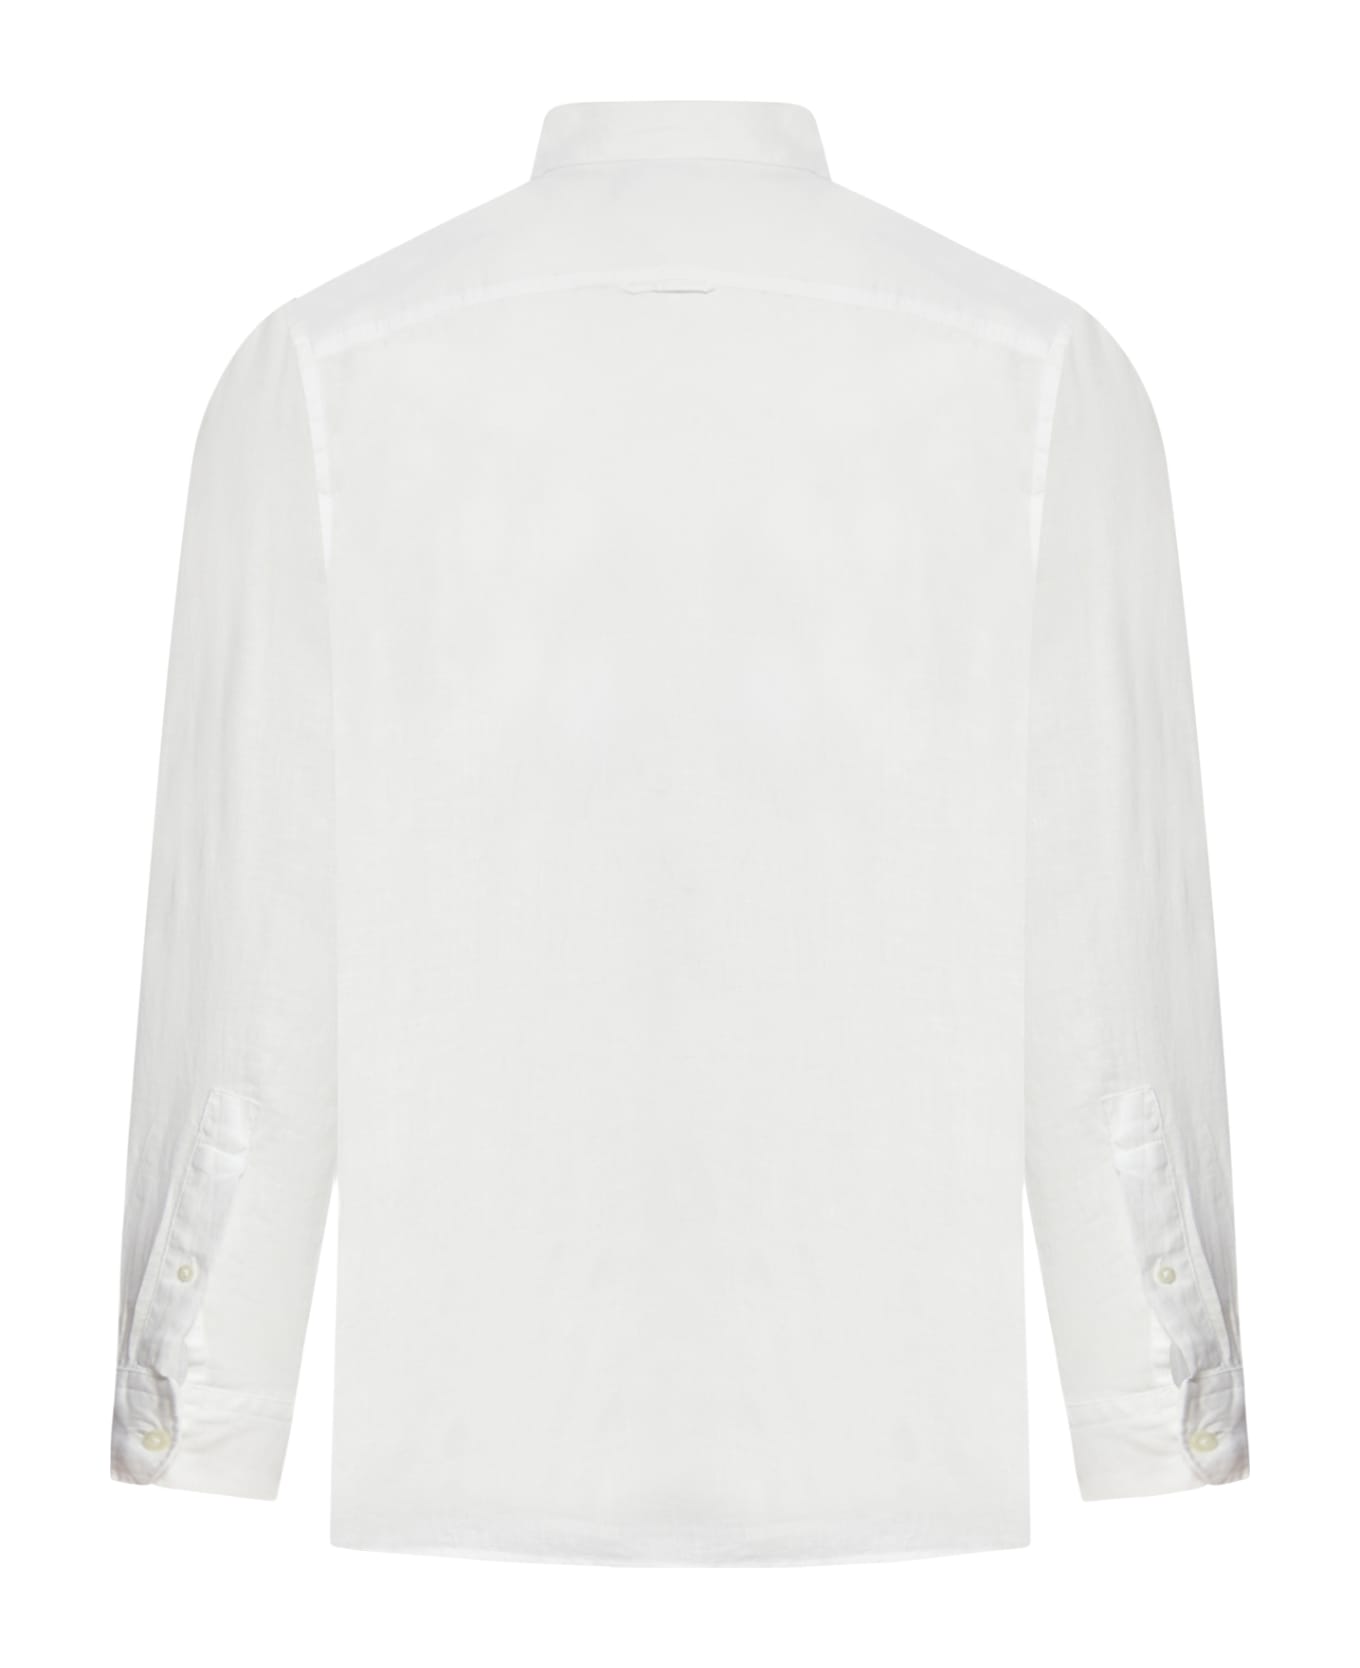 Woolrich Linen Shirt - Bright White